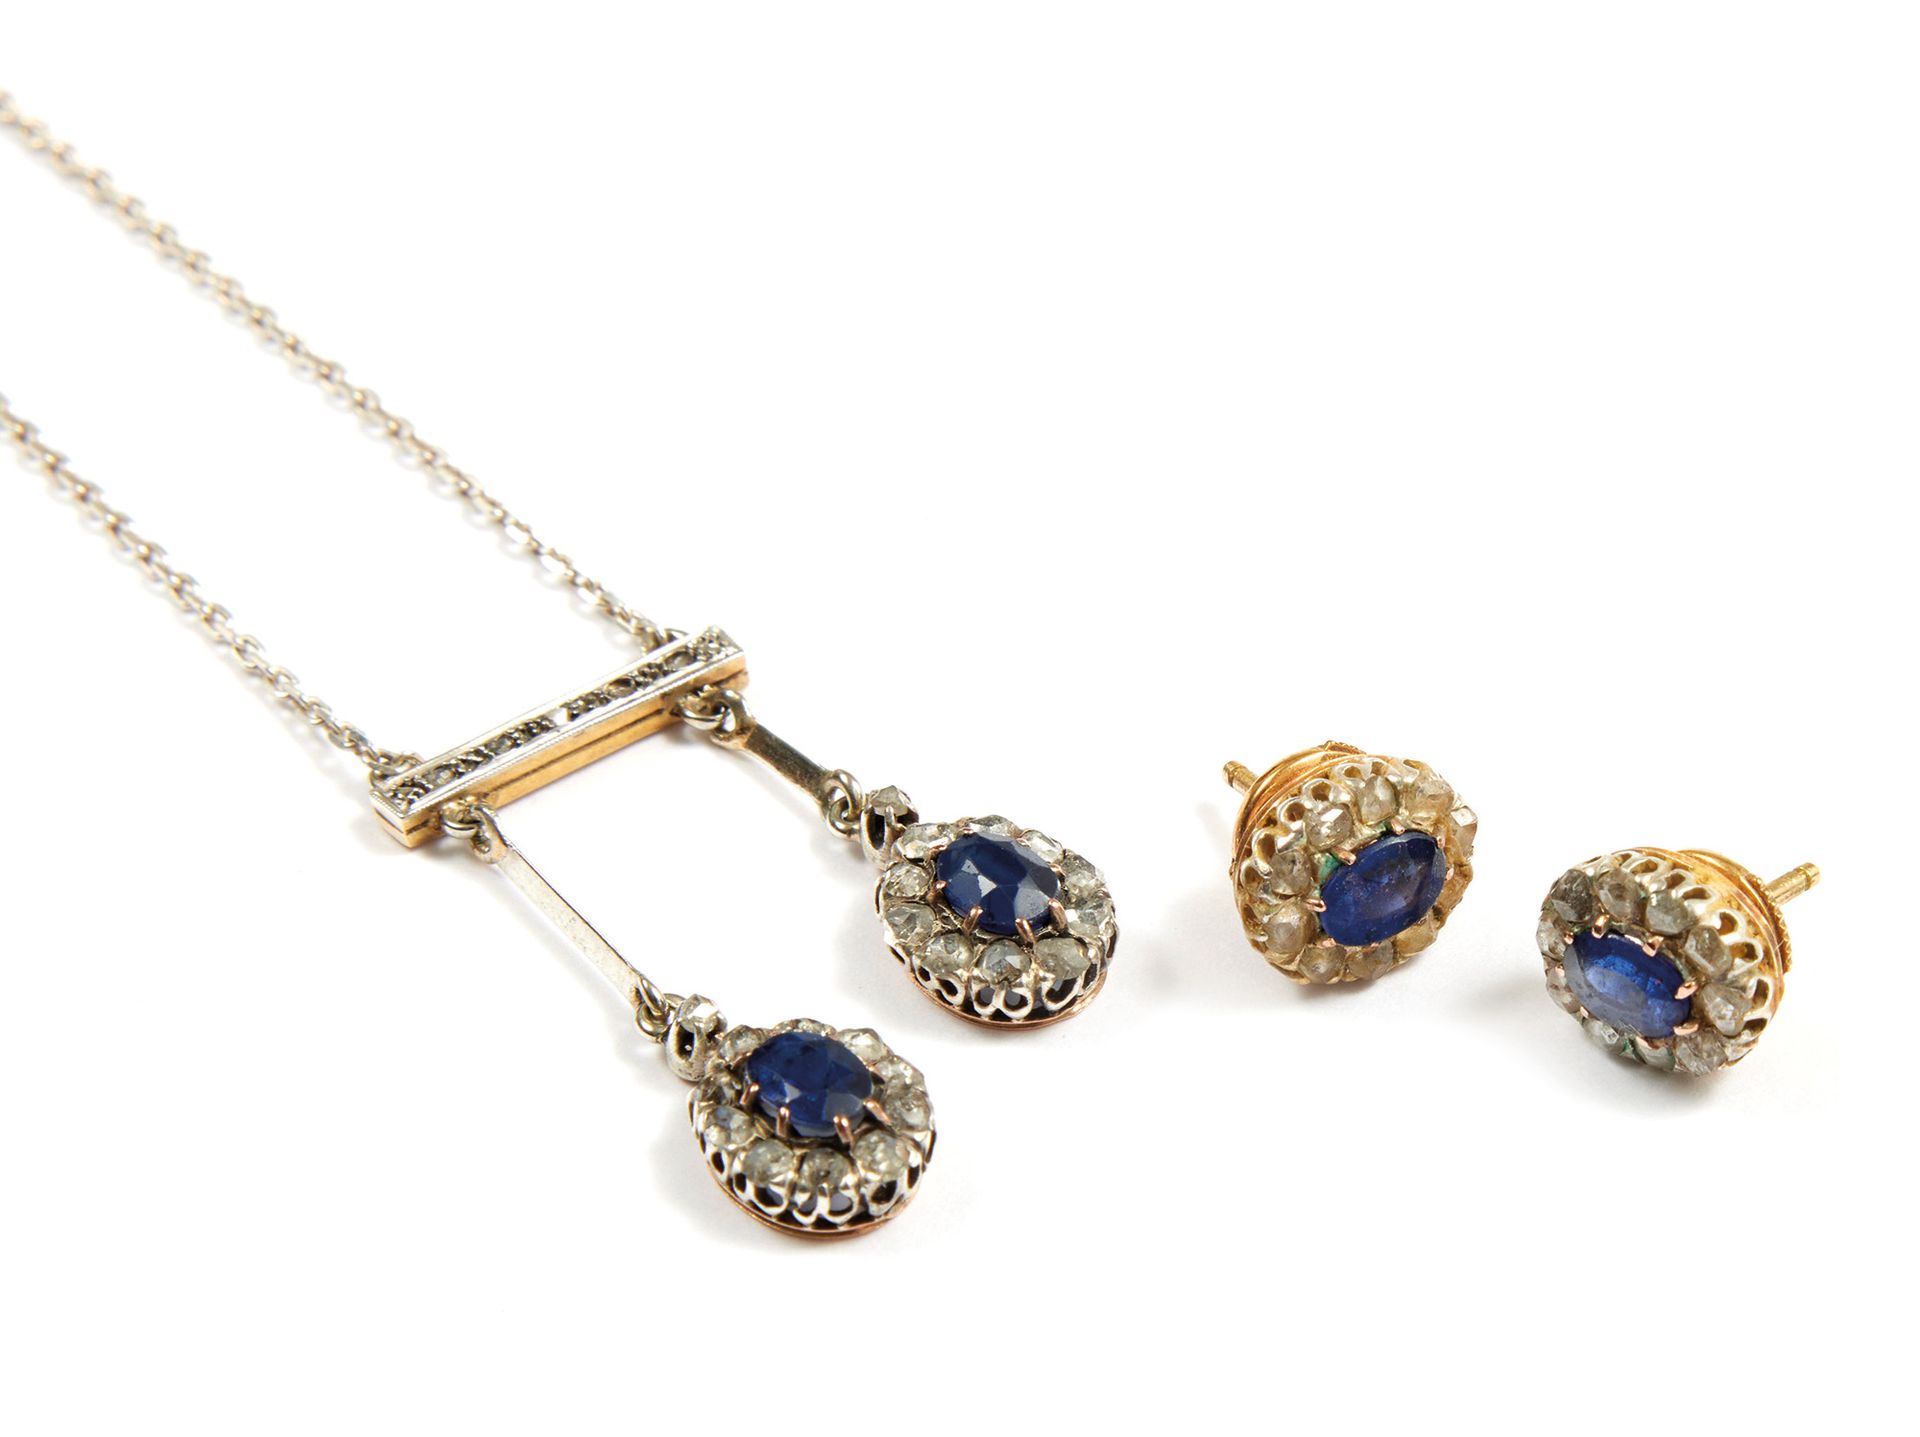 Demi-parure 半镶嵌 
包括：一条镶有玫瑰式切割钻石的项链，上面有两个吊坠，每个吊坠都镶有一颗椭圆形的蓝宝石，周围有玫瑰式切割钻石。 
毛重：8克 
&hellip;